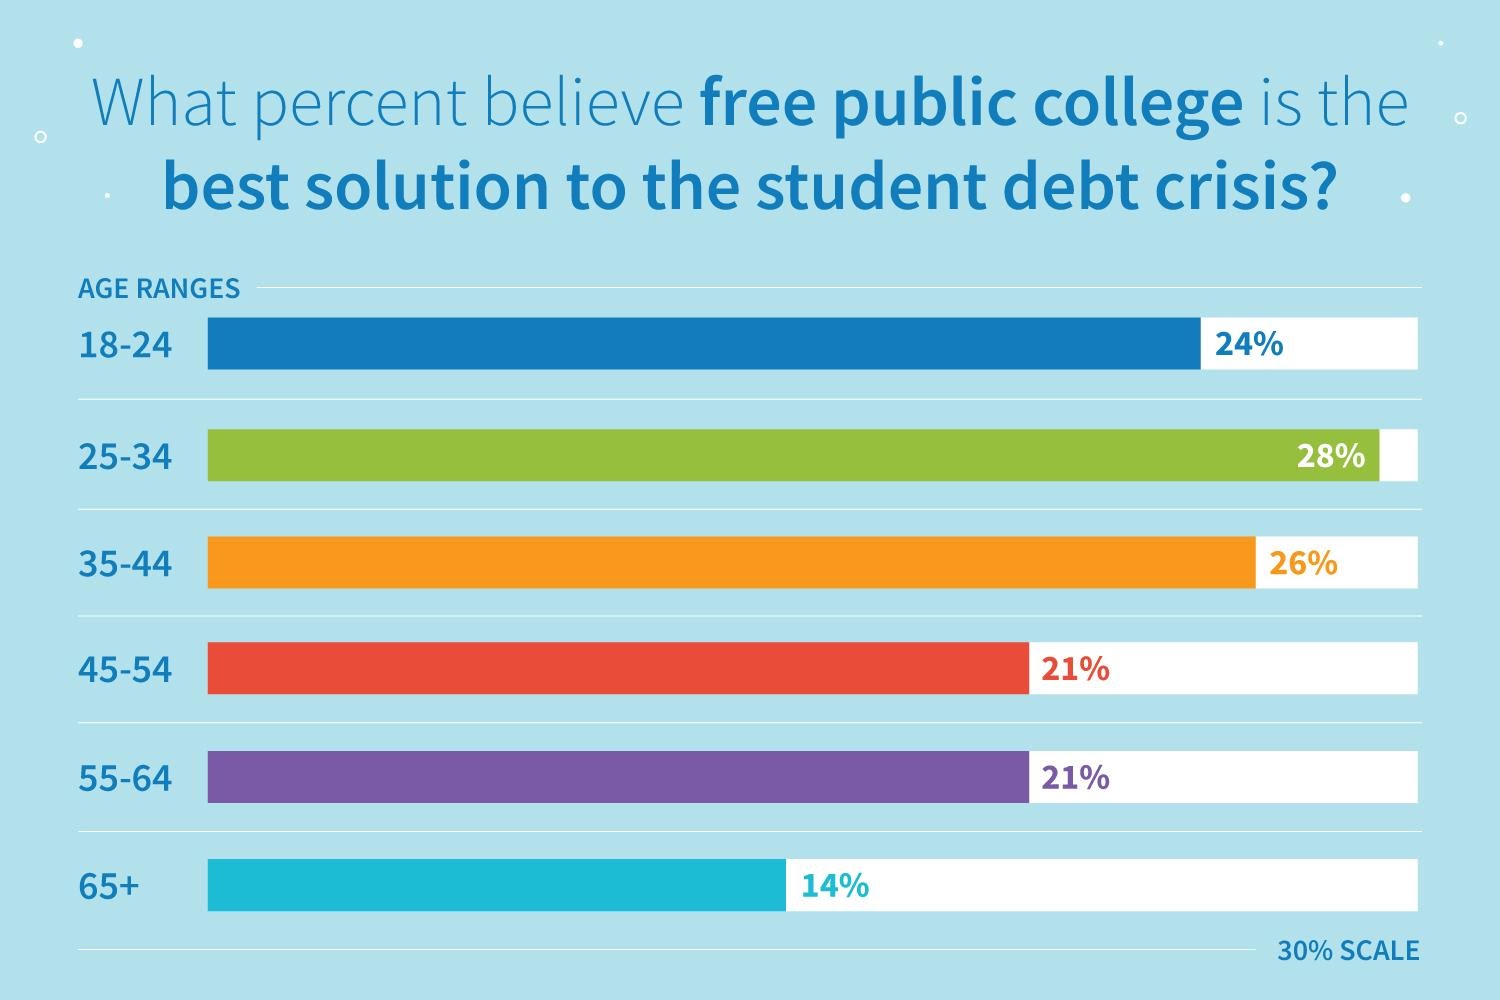 Resultados de la encuesta: ¿qué porcentaje cree que la universidad pública gratuita es la mejor solución para la crisis de la deuda estudiantil?